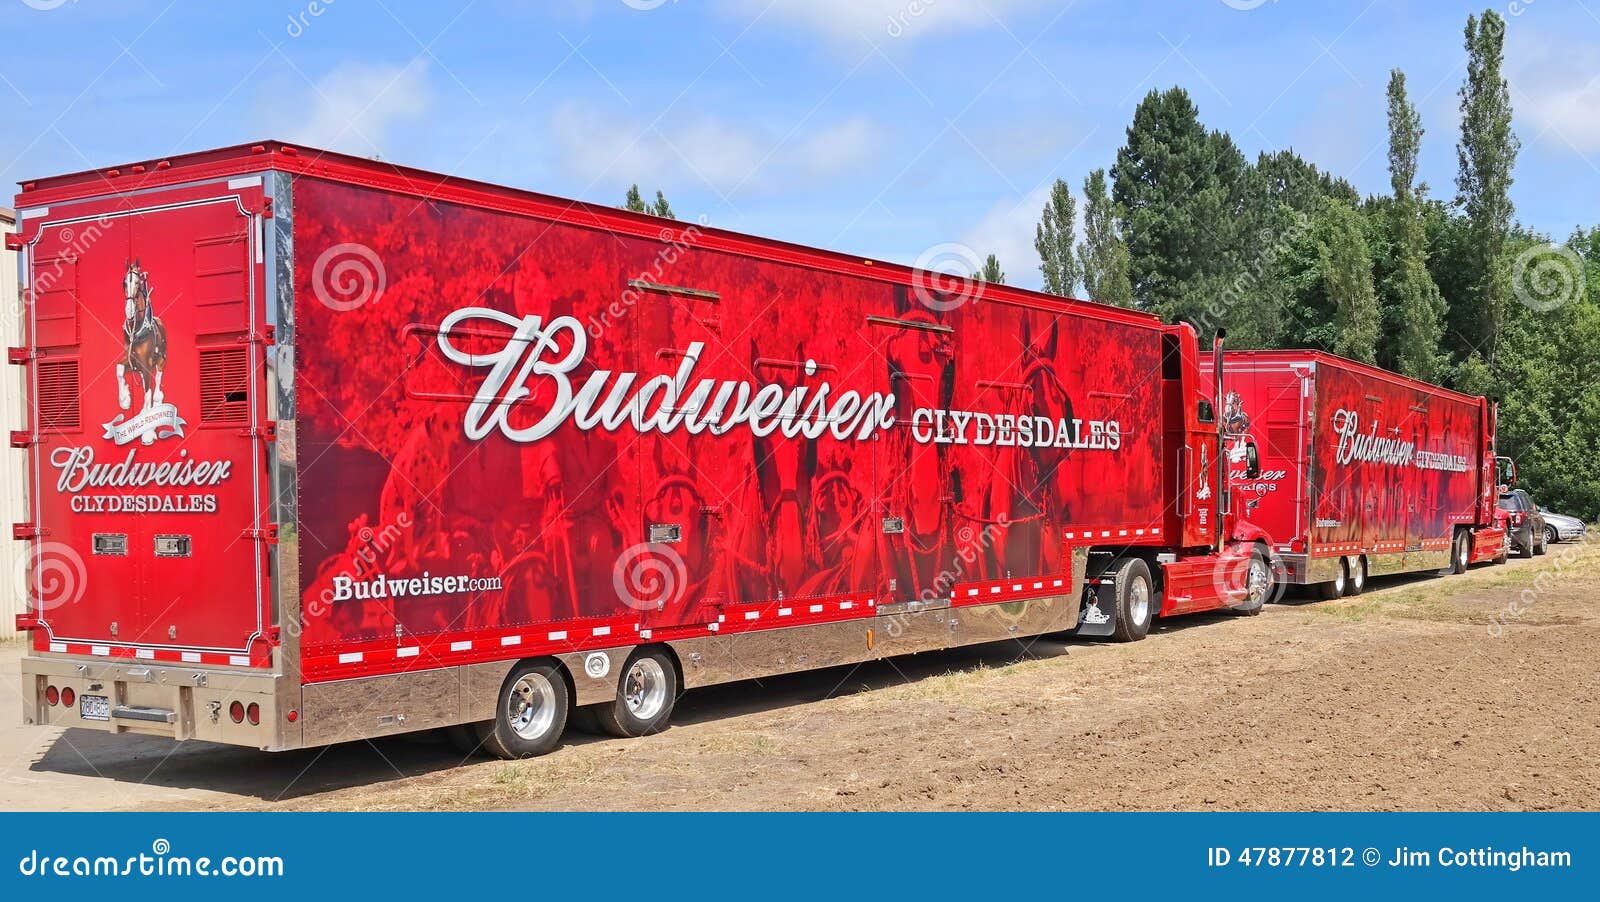 Budweiser Semi Truck